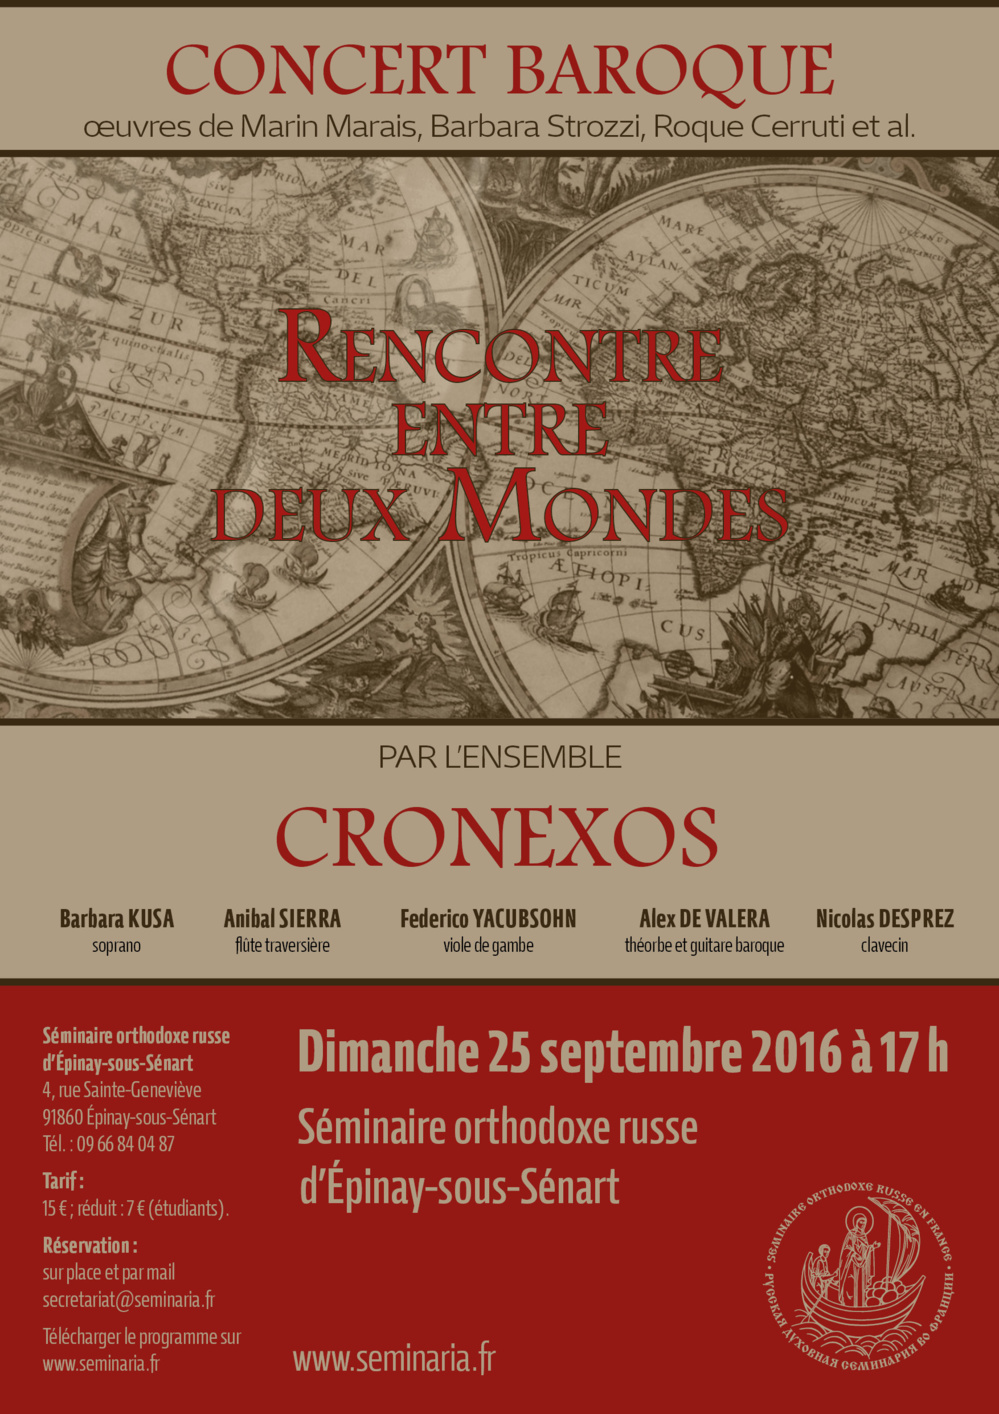 Concert de musique baroque par l'ensemble Cronexos : "Rencontre entre deux mondes". Dimanche 25 septembre à 17 h au Séminaire